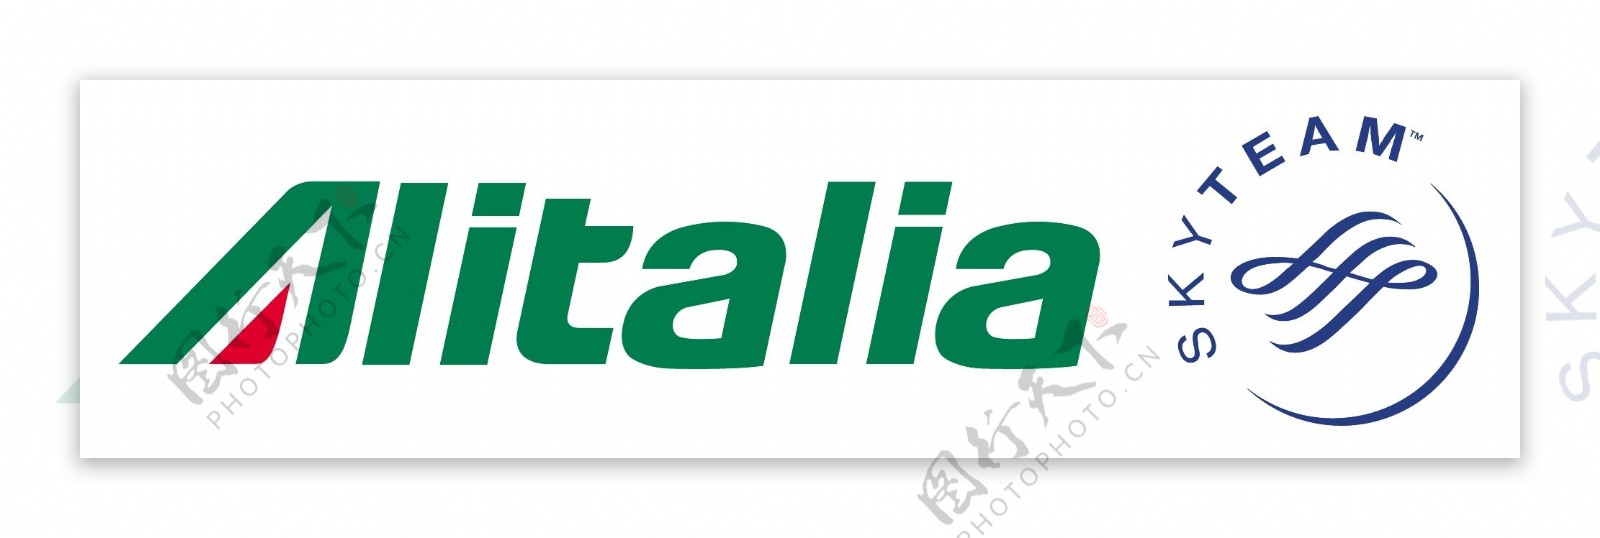 意大利航空公司天合联盟的新标志